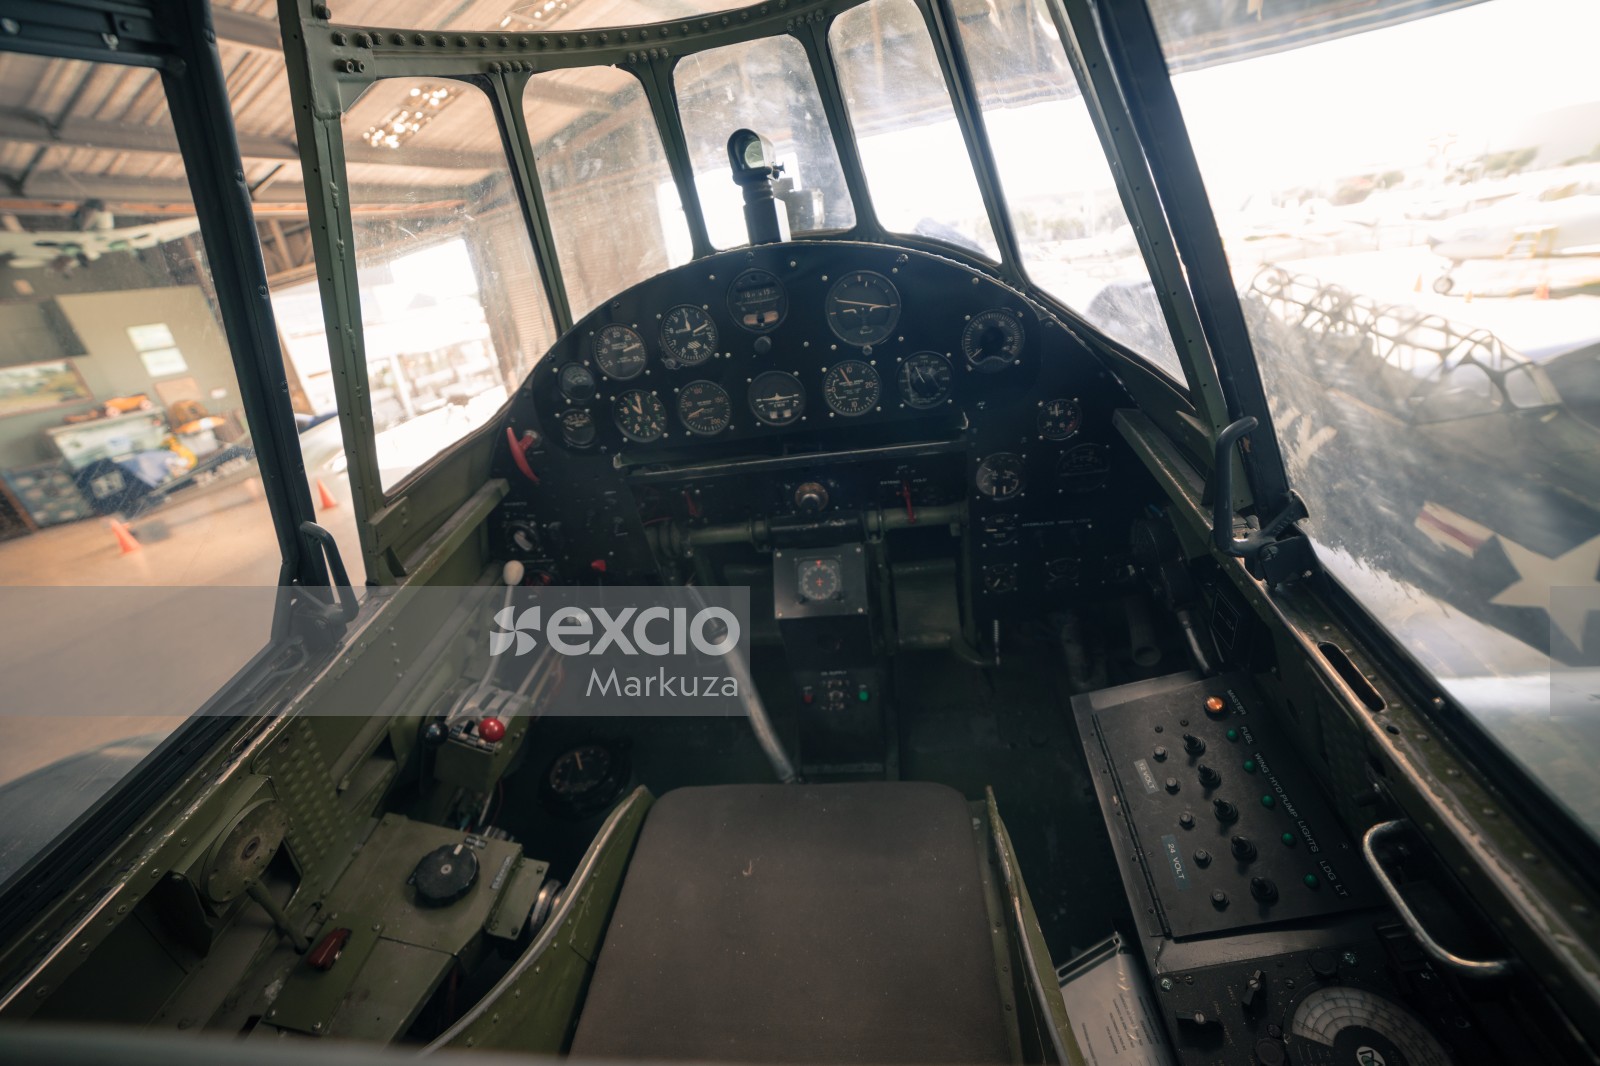 Grumman Avenger's cockpit